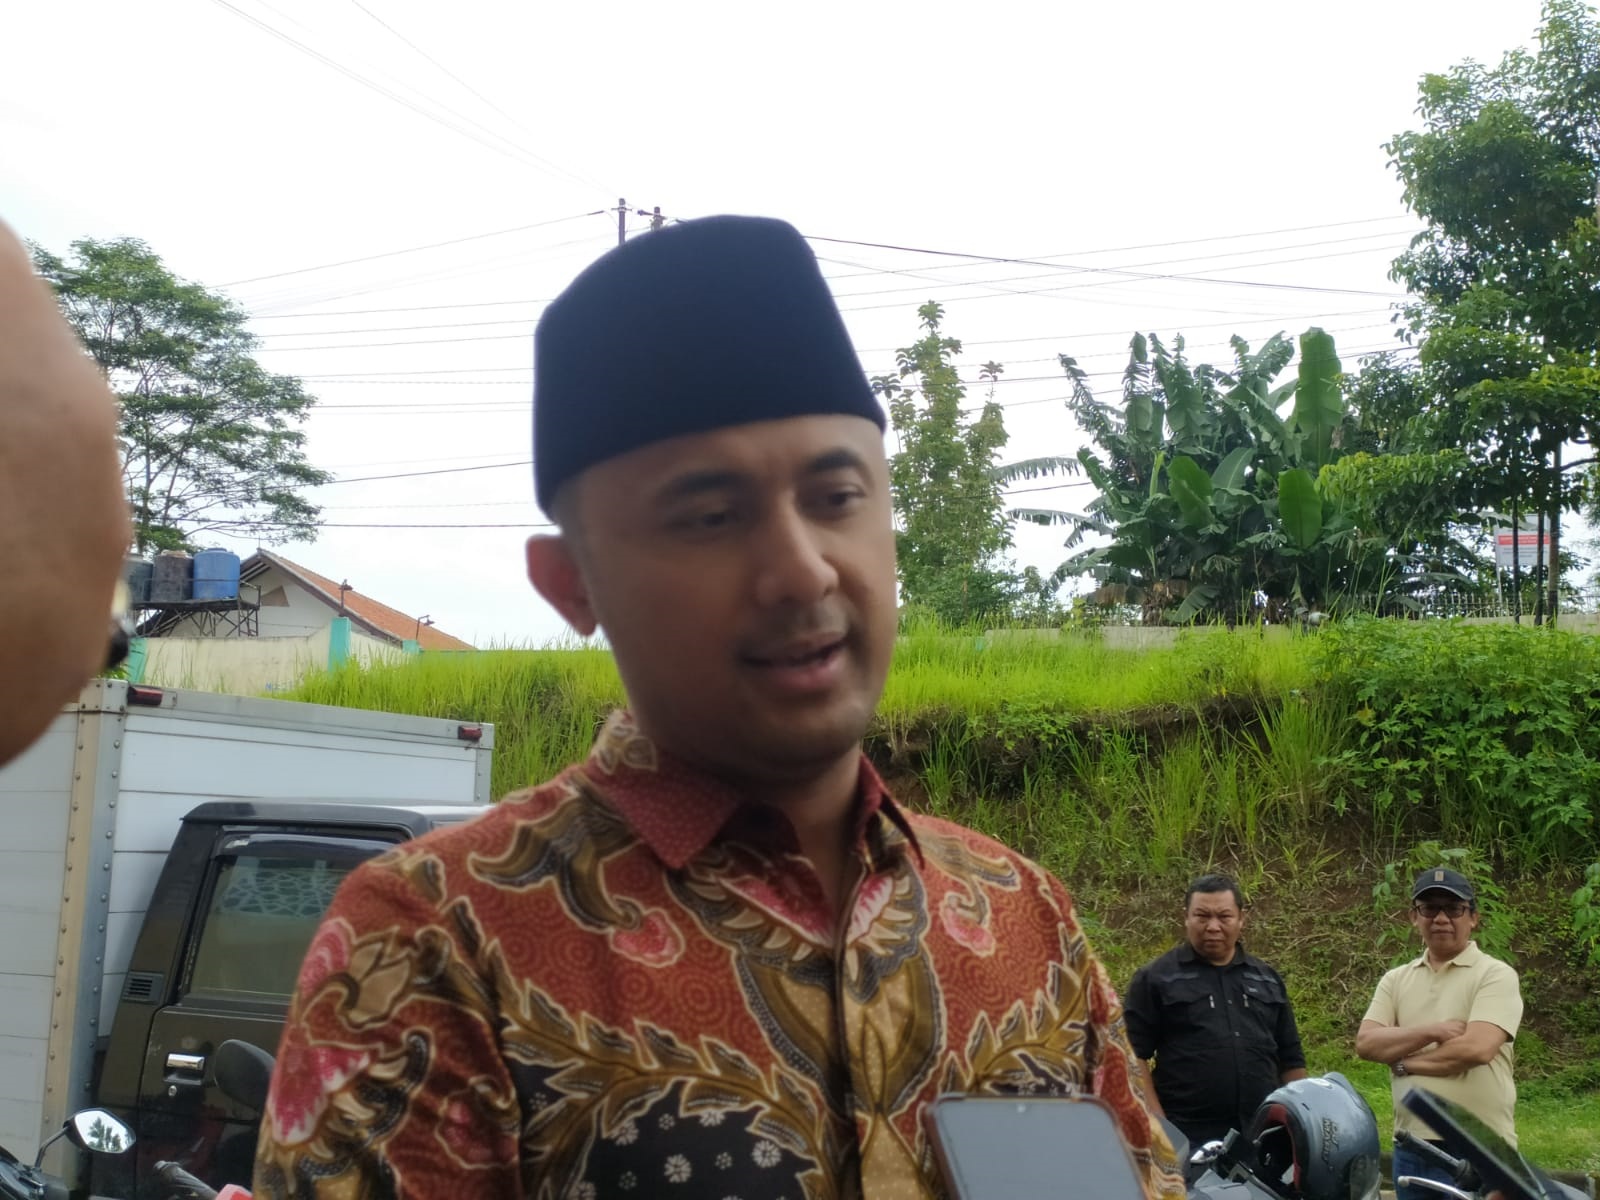 Bupati Bandung Barat Hengky Kurniawan berharap peran ulama mampu menurunkan atensi p]olitik saat monumen pesta demokrasi digelar.